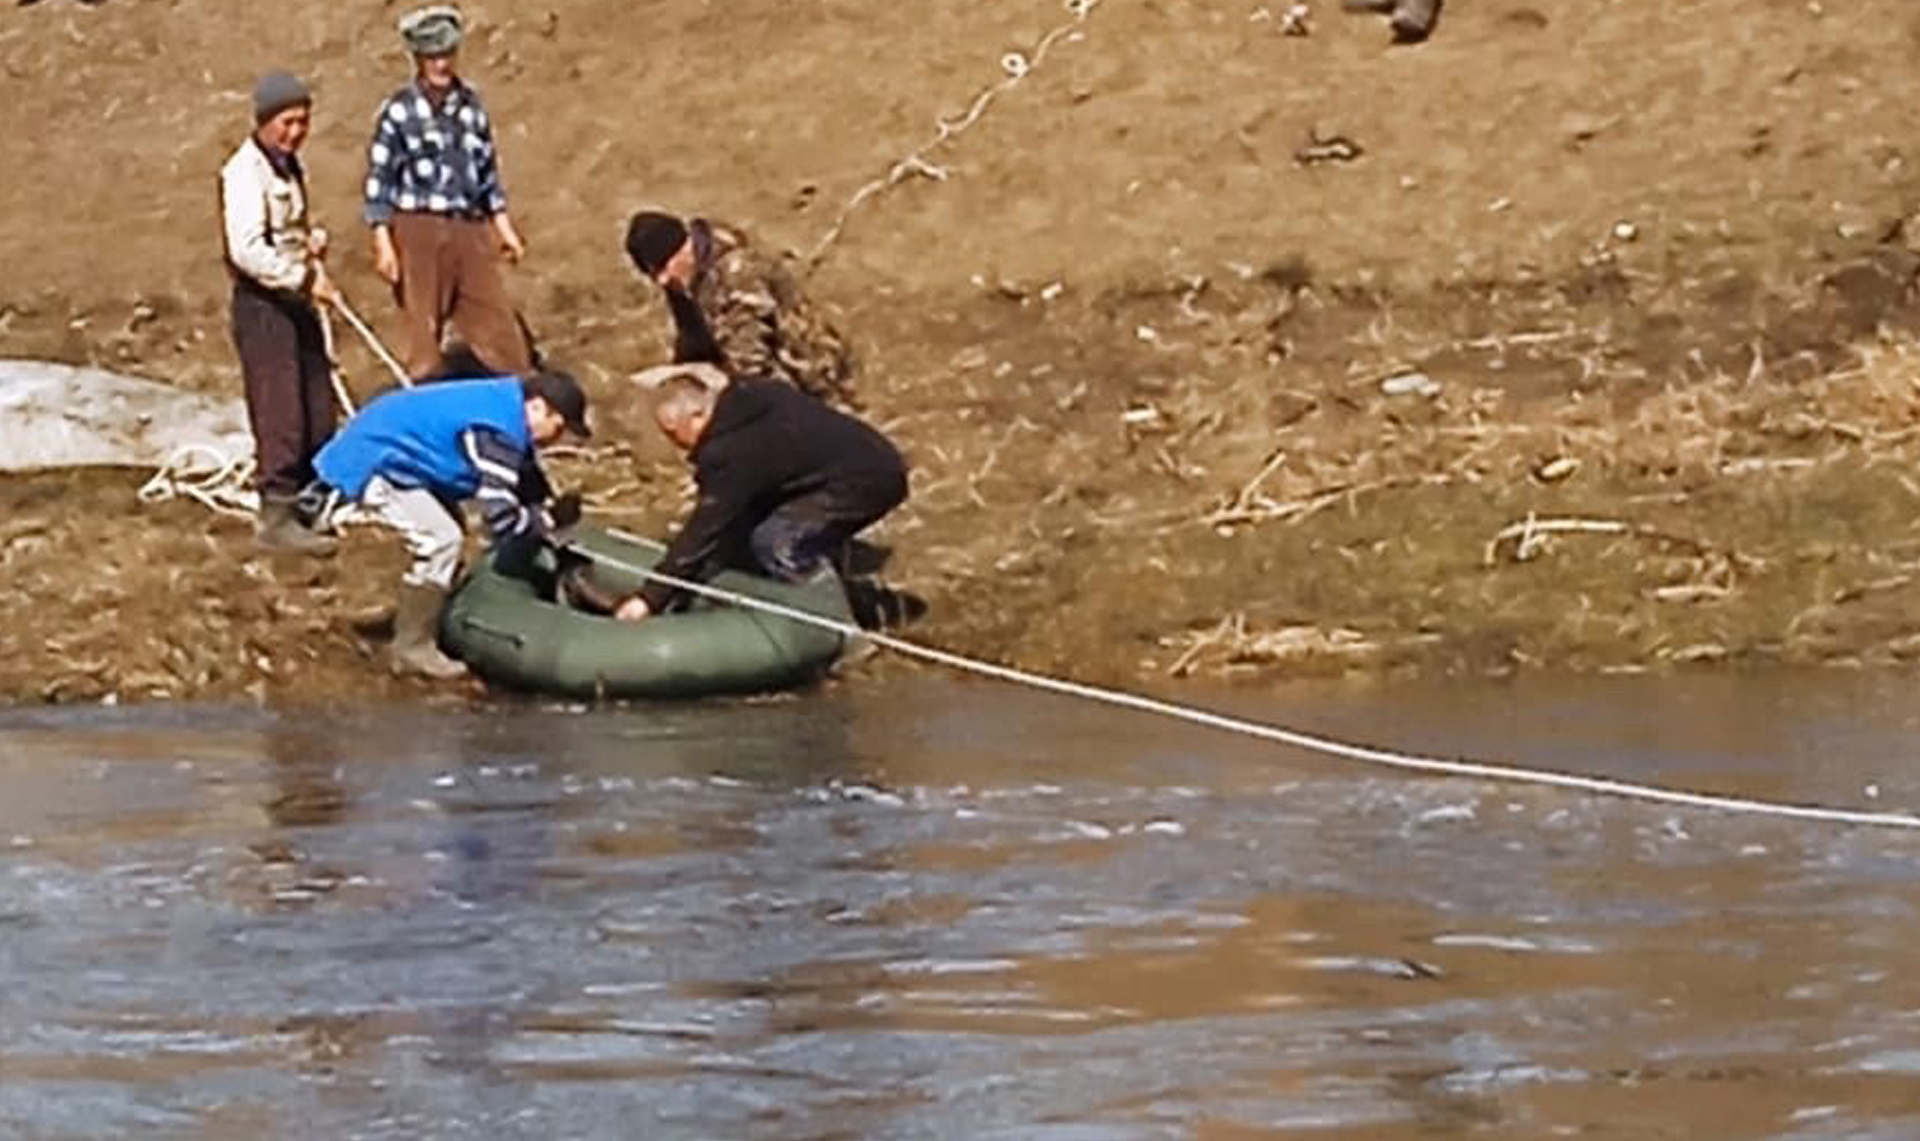 Во время паводка в поселке Копаловский Нагайбакского района разрушился мост, из-за чего продукты жителям пришлось доставлять на лодках